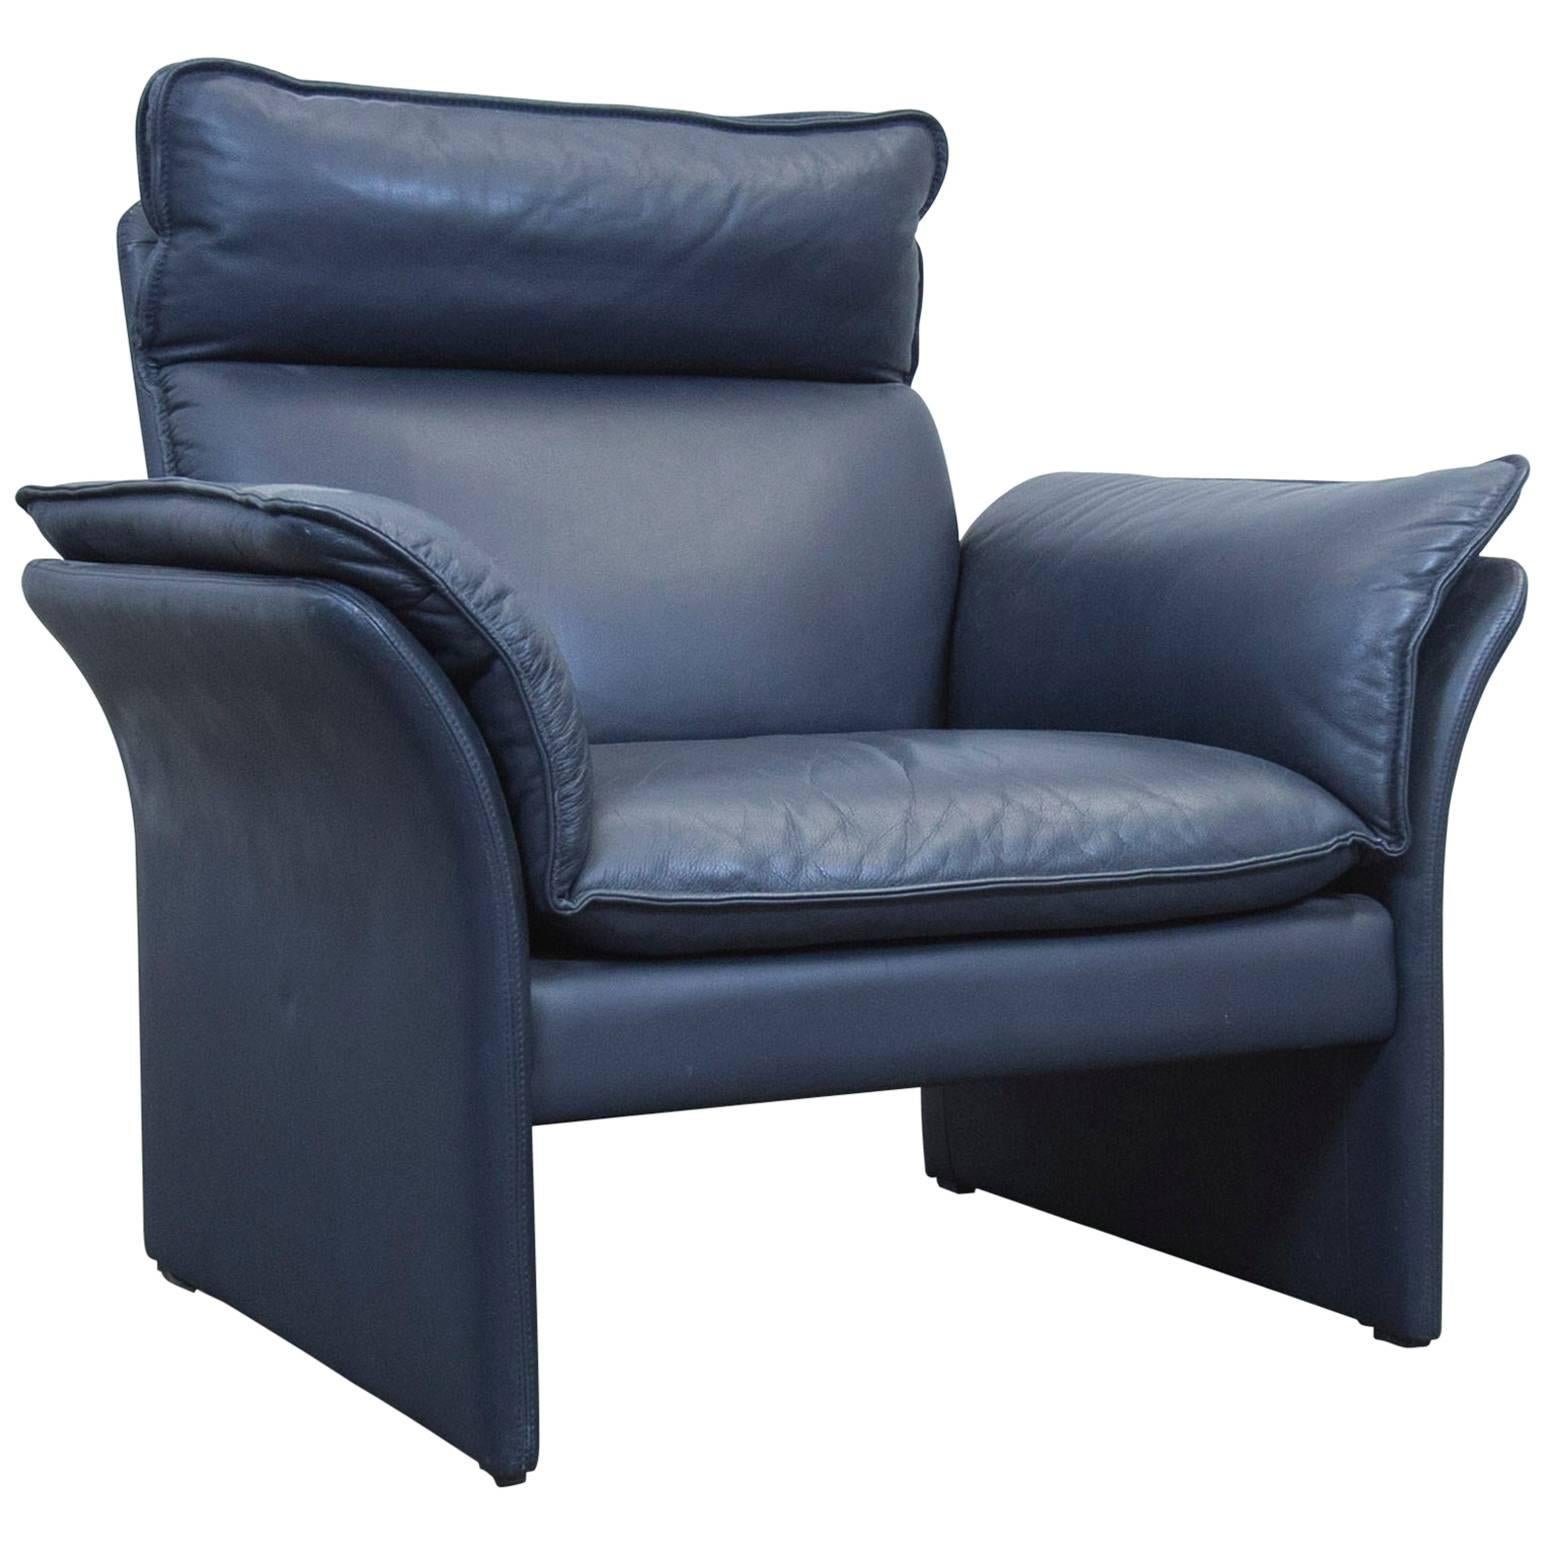 Dreipunkt Designer Chair Leather Blue Grey Couch Modern